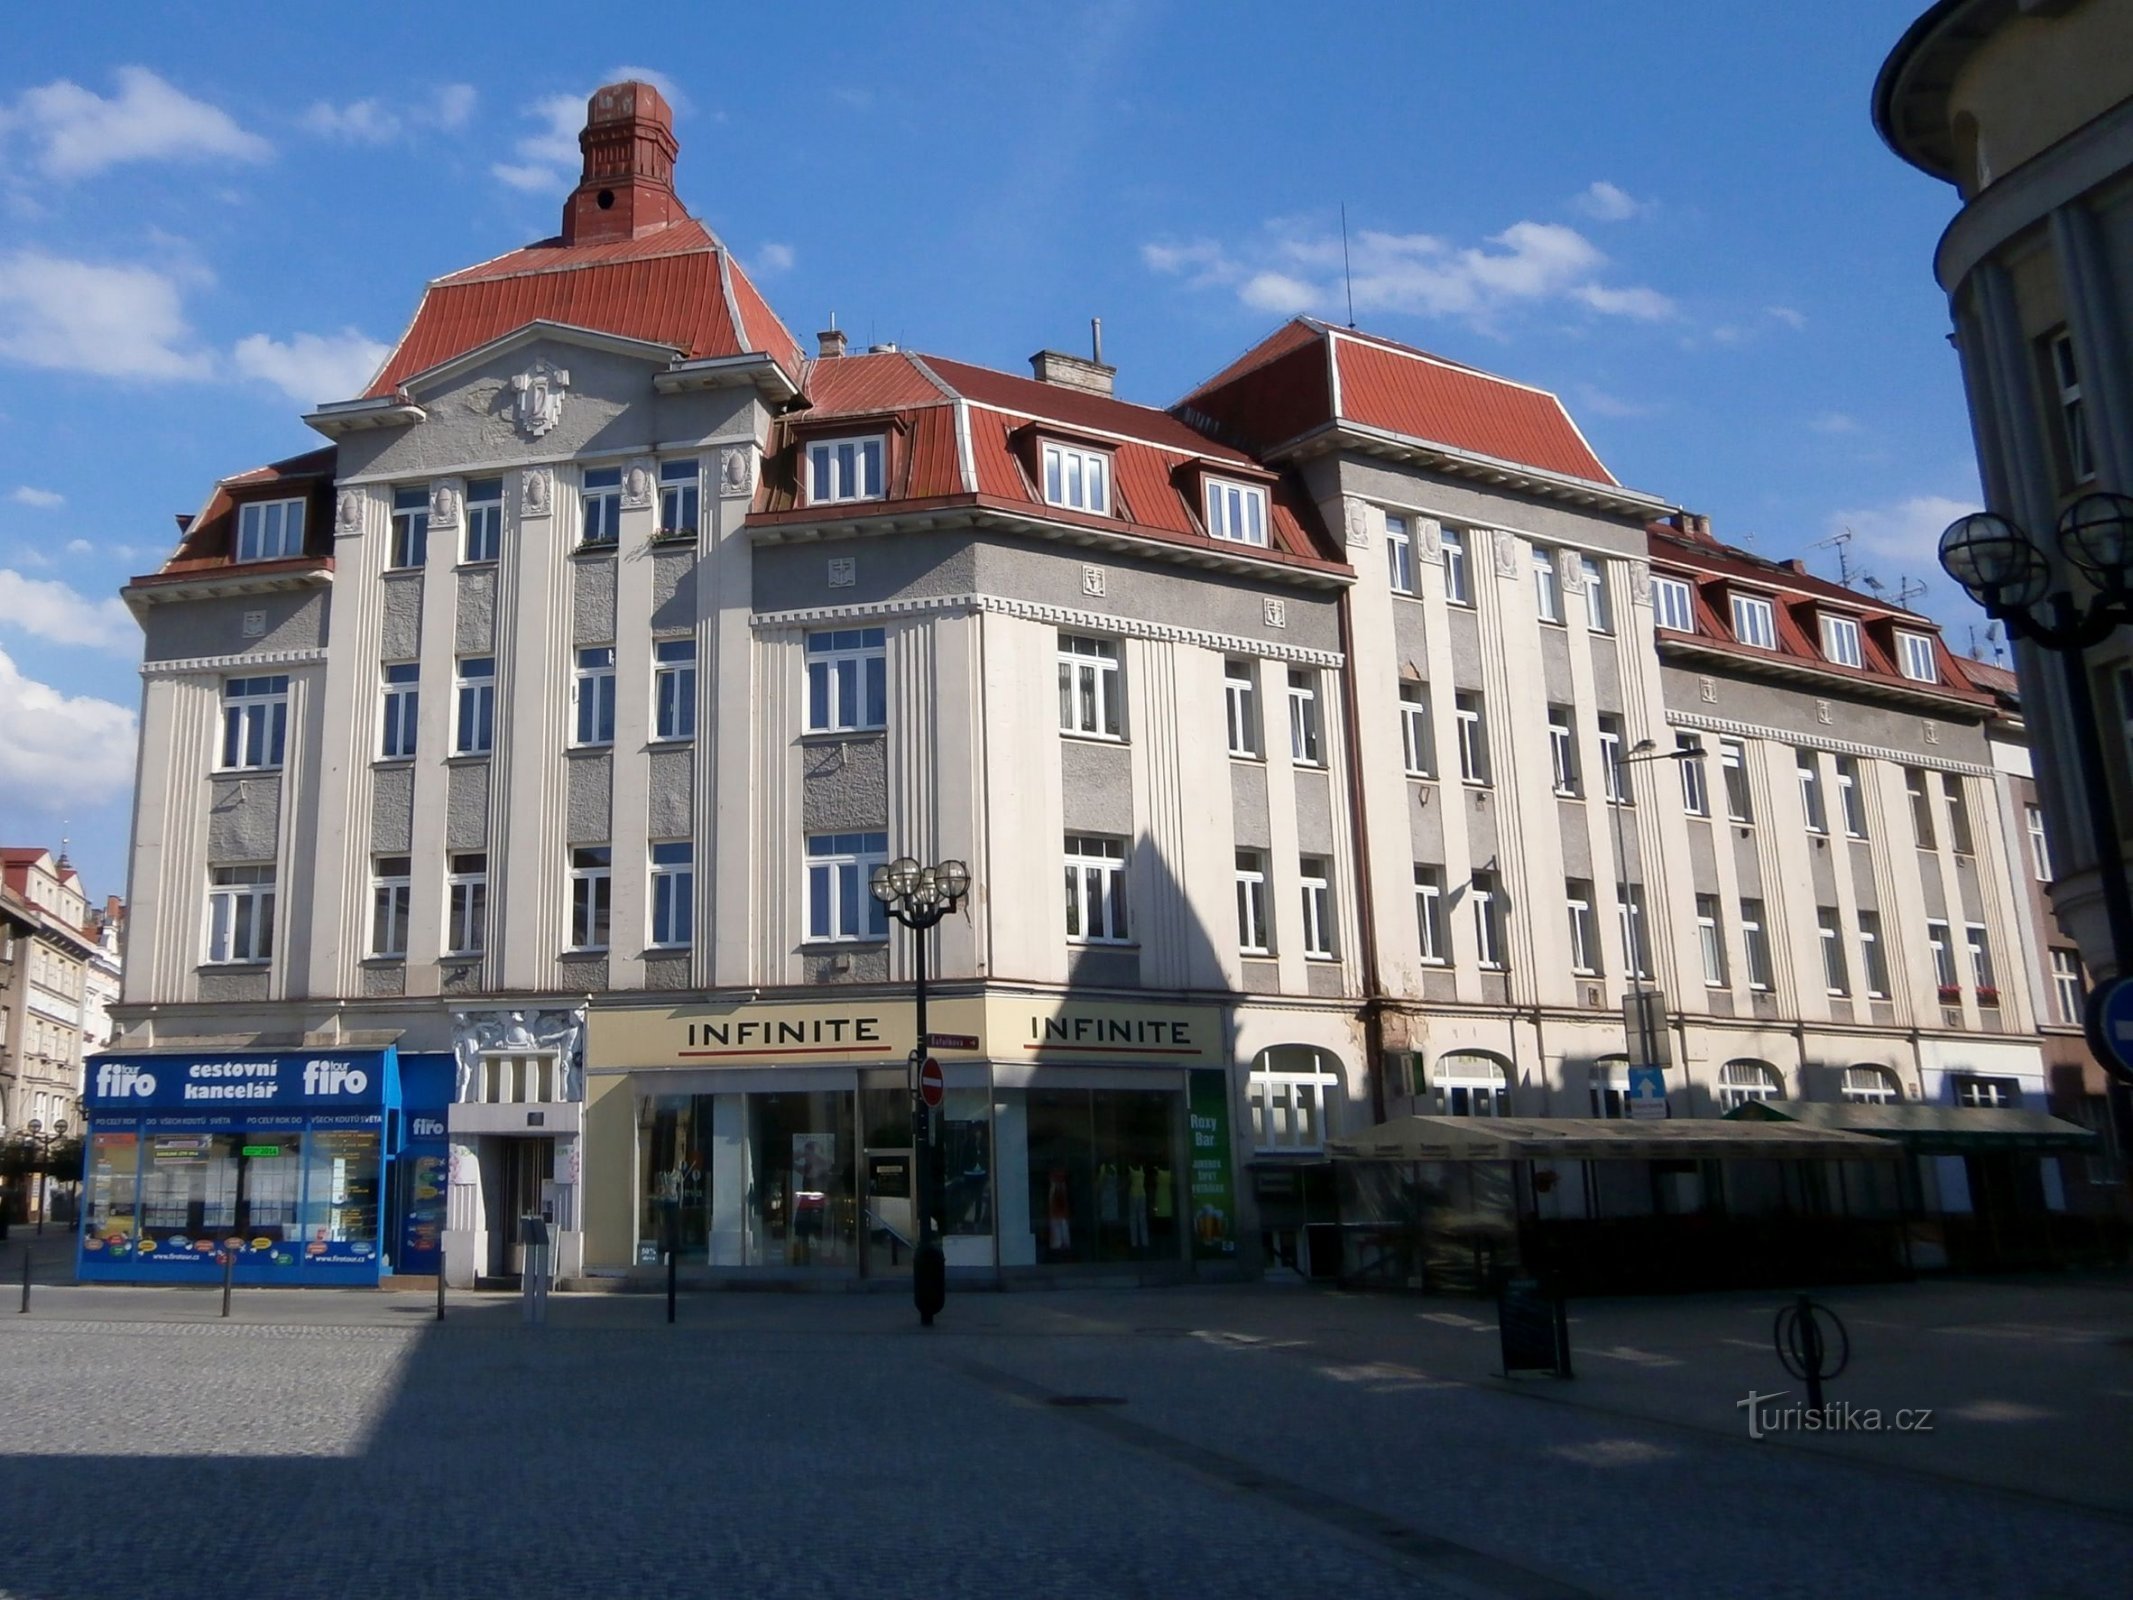 Kereskedelmi ház (Hradec Králové, 28.6.2014.)